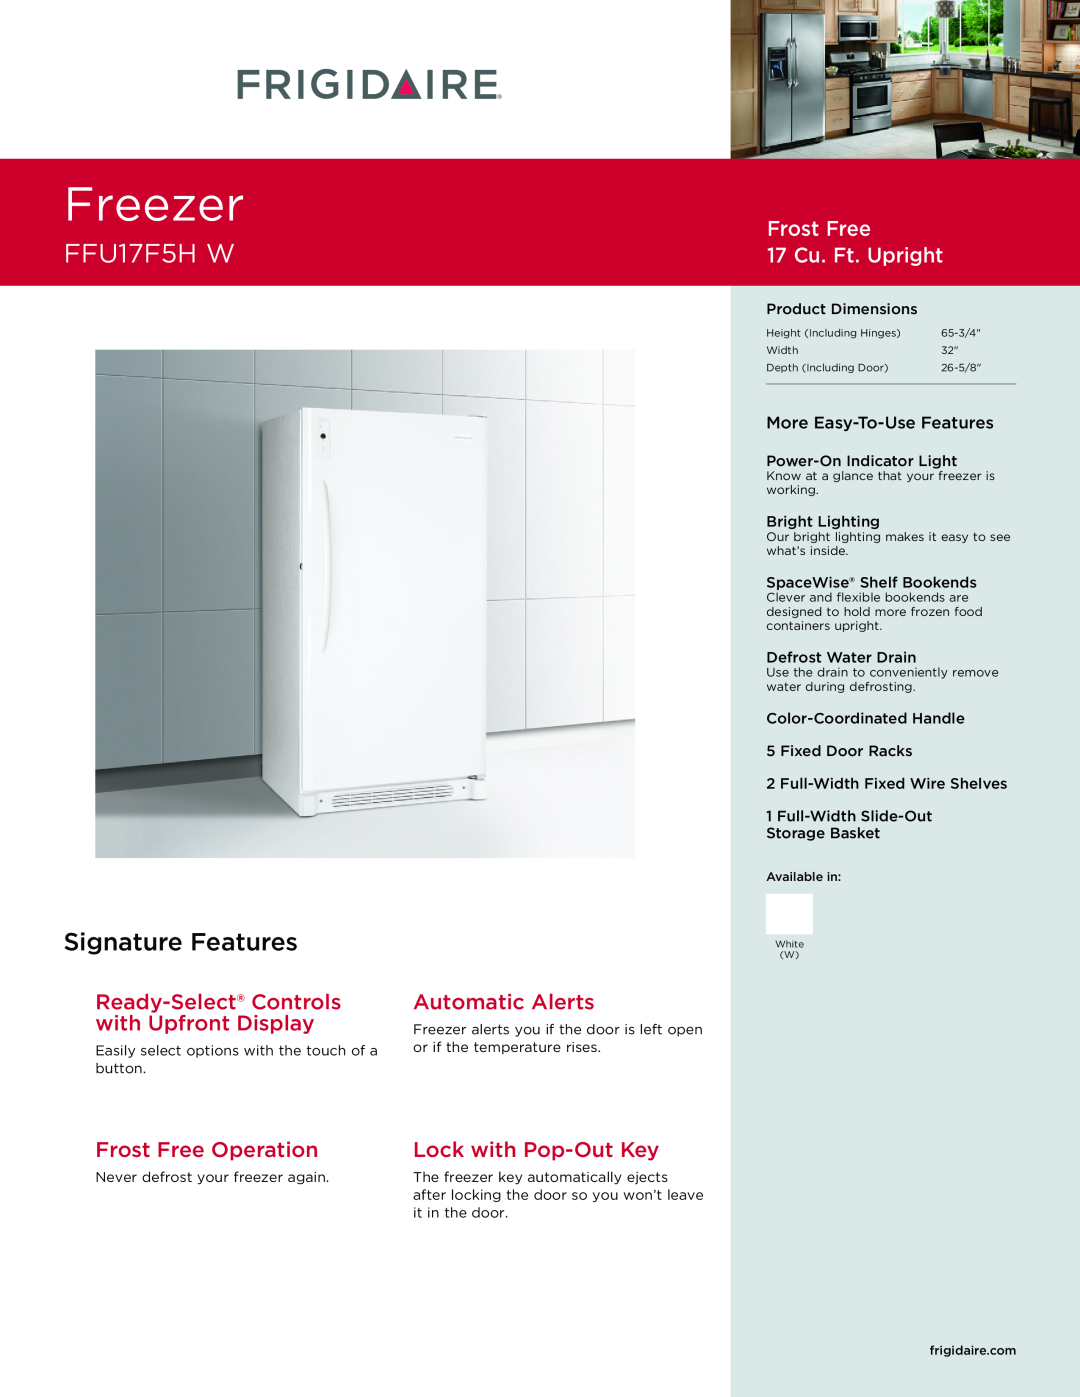 Frigidaire FFU17F5HW dimensions Freezer, FFU17F5H W, Signature Features, Frost Free 17 Cu. Ft. Upright, Automatic Alerts 